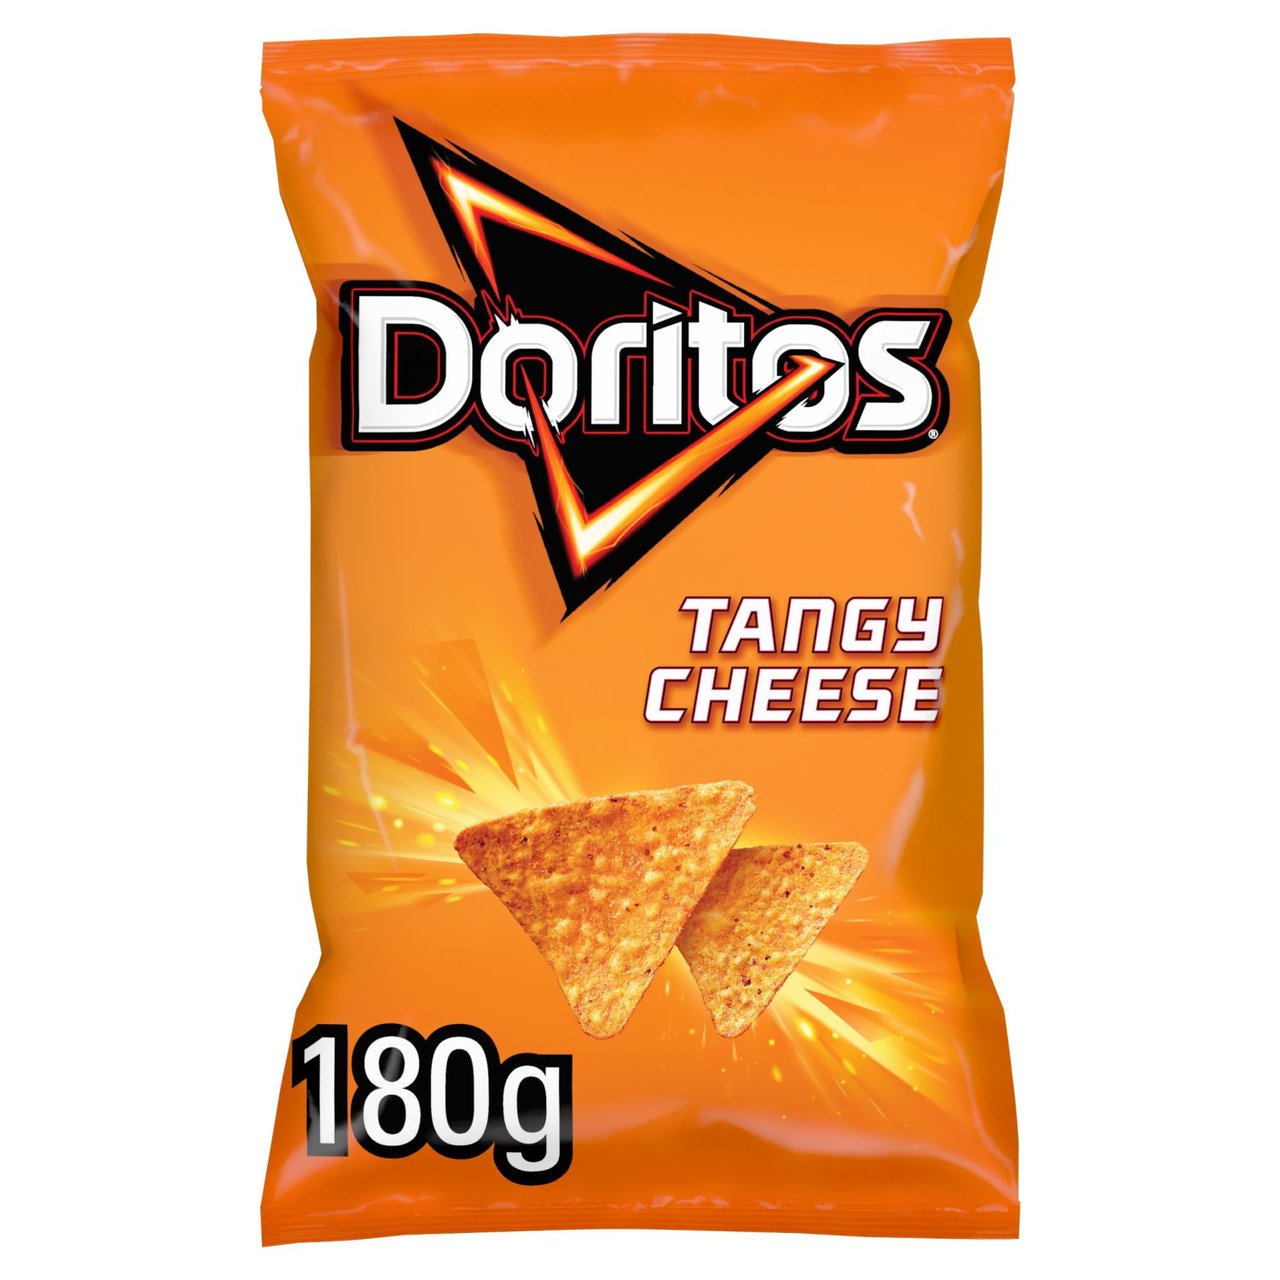 Doritos Tangy Cheese 180g